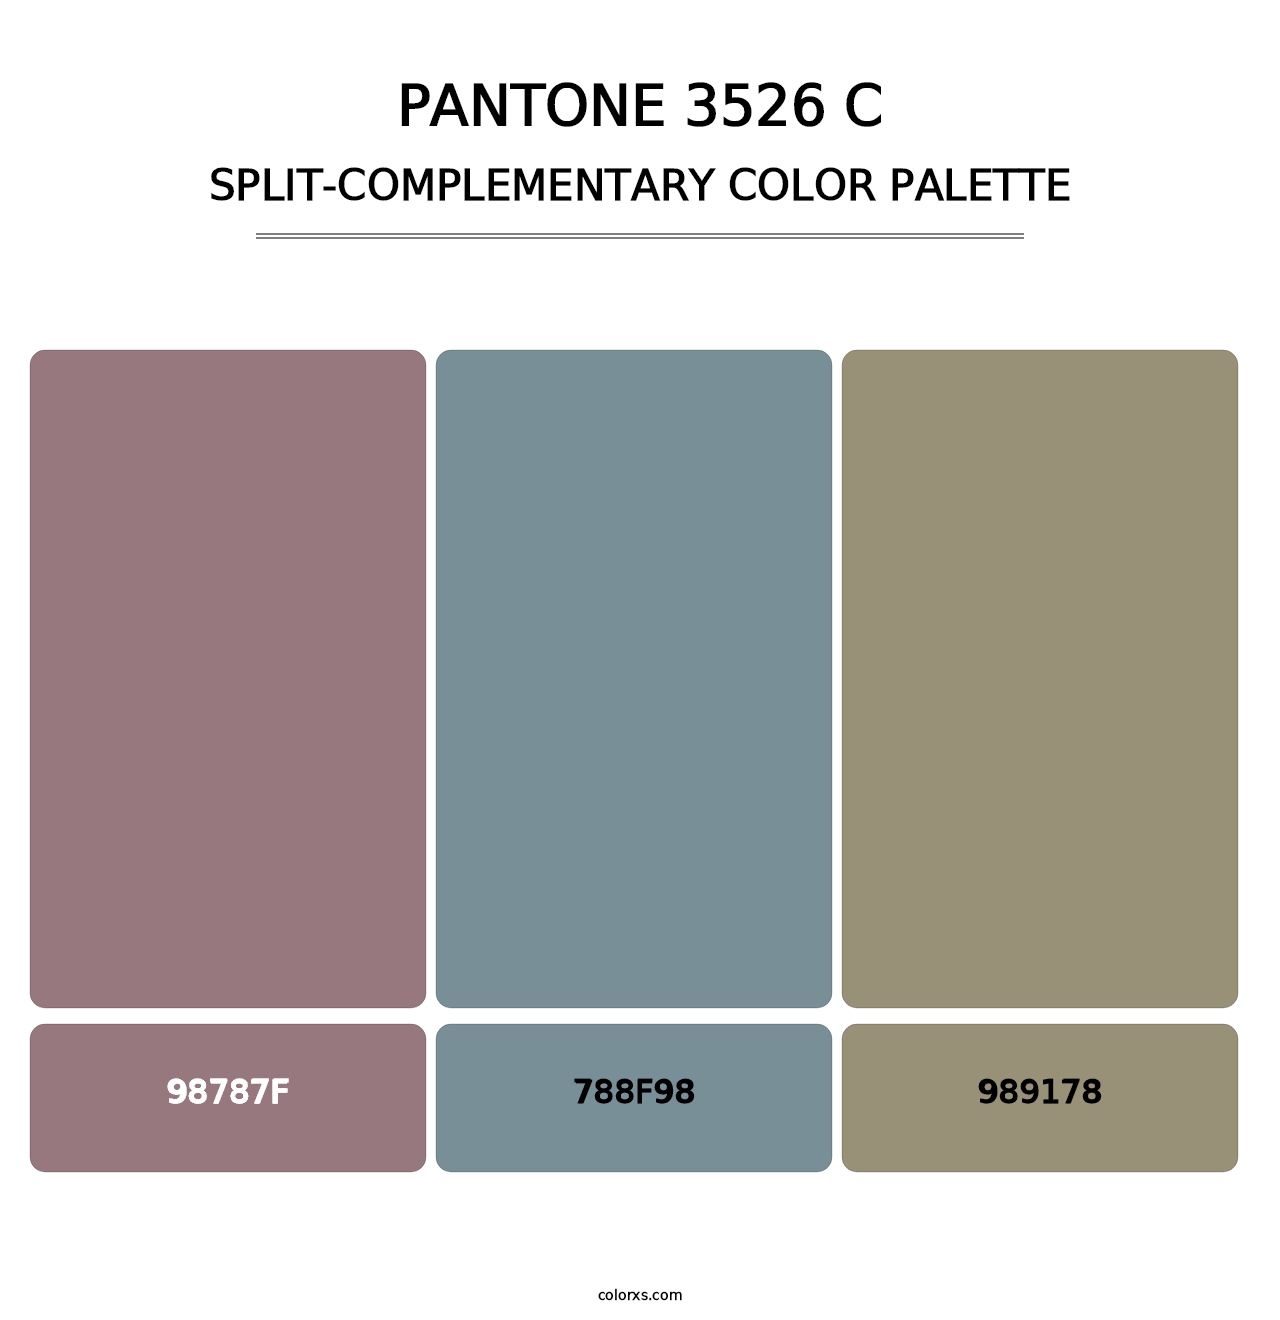 PANTONE 3526 C - Split-Complementary Color Palette